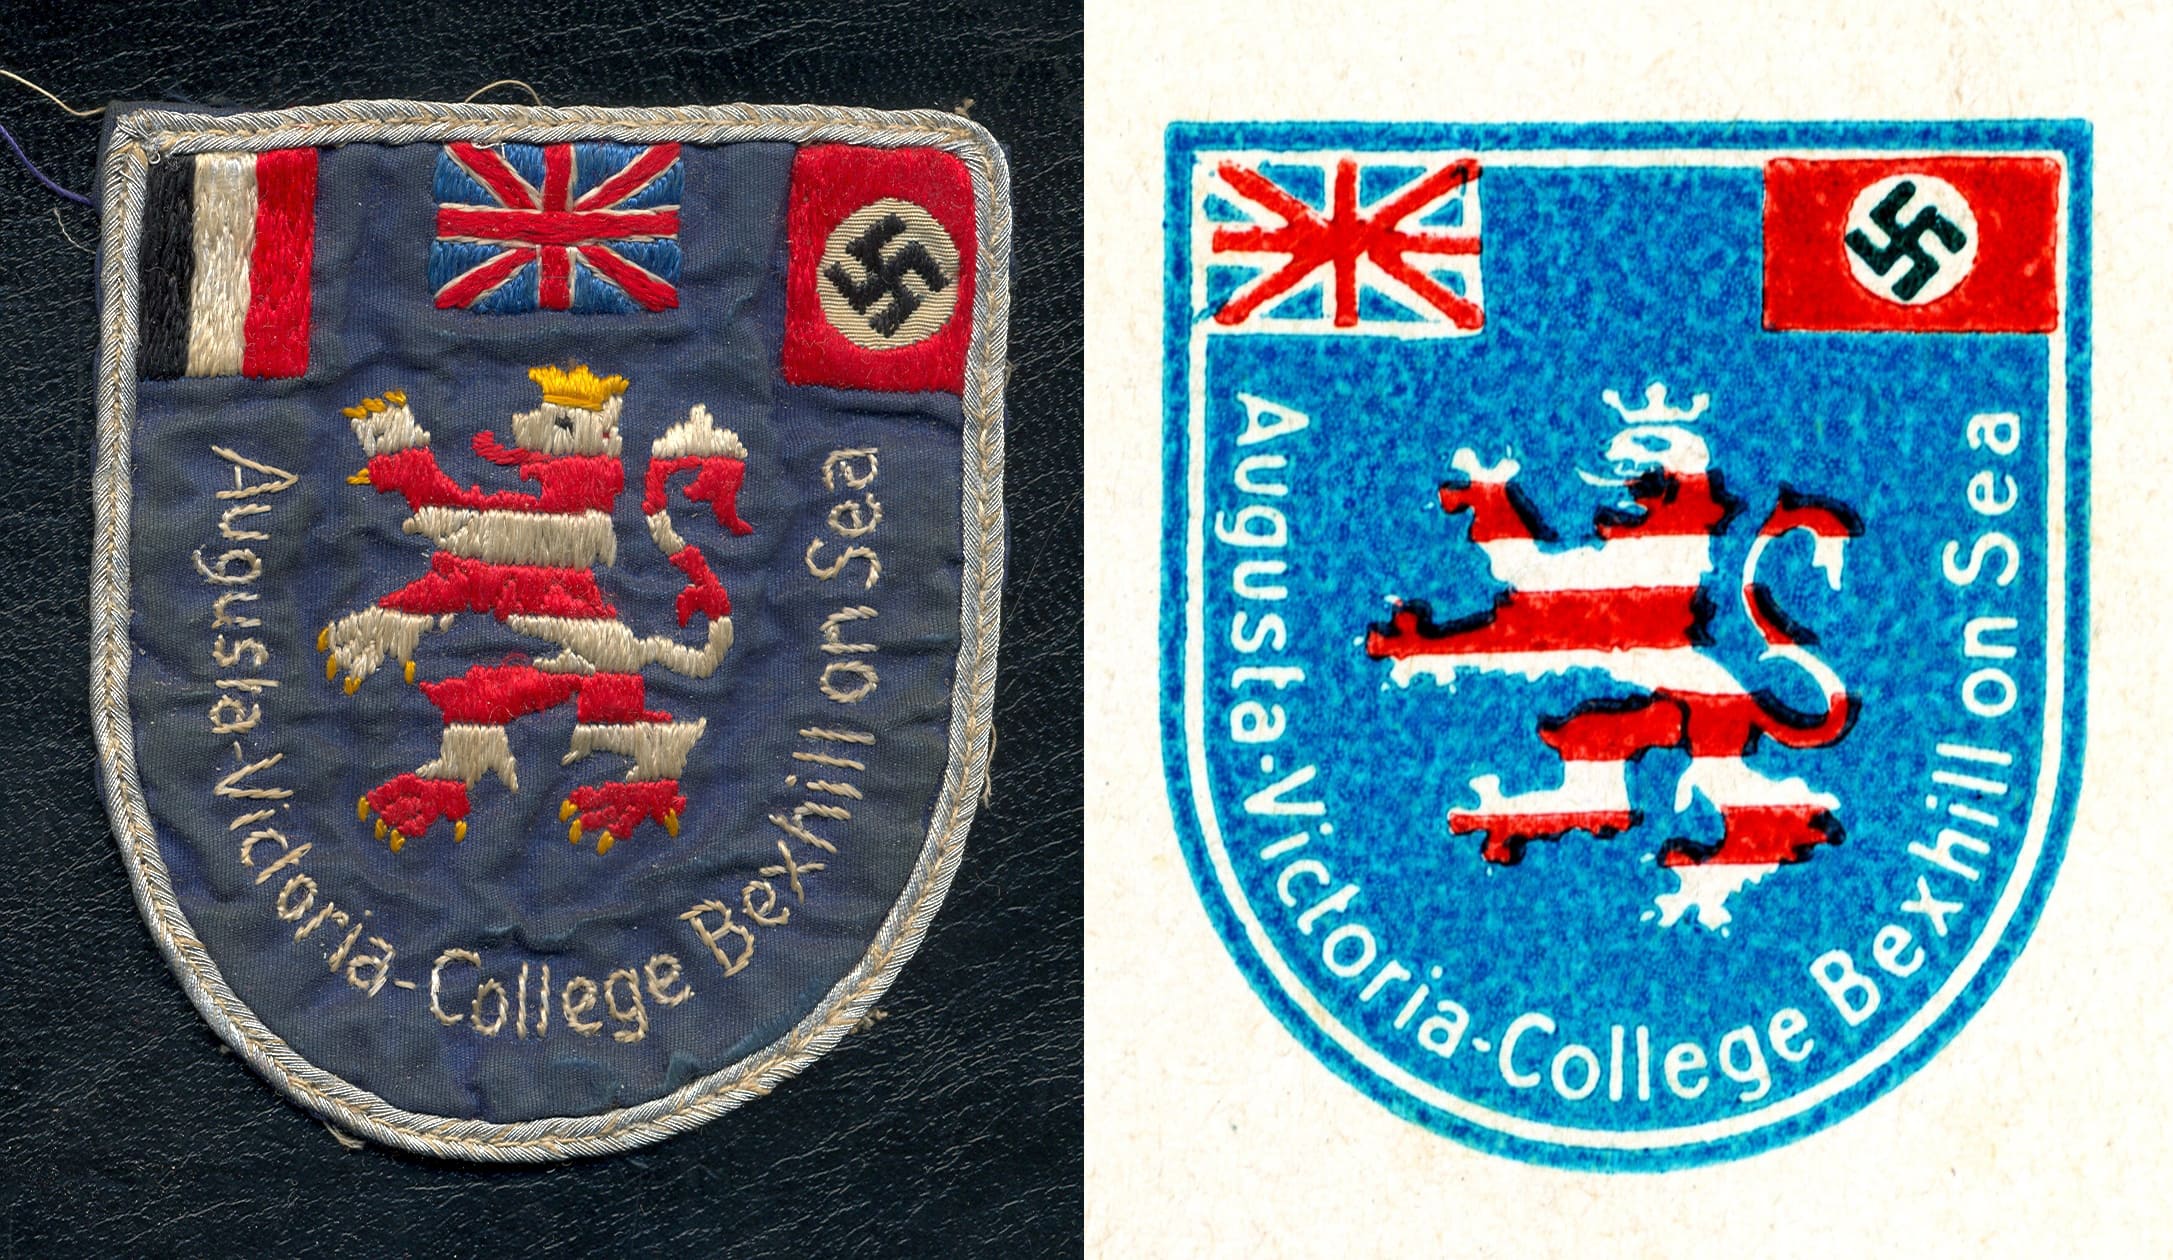 בצד שמאל: סמל אוגוסט ויקטוריה לפני 1935. מימין: הסמל אחרי 1935, ללא הדגל של גרמניה (צילום: באדיבות מוזיאון בקסהיל)